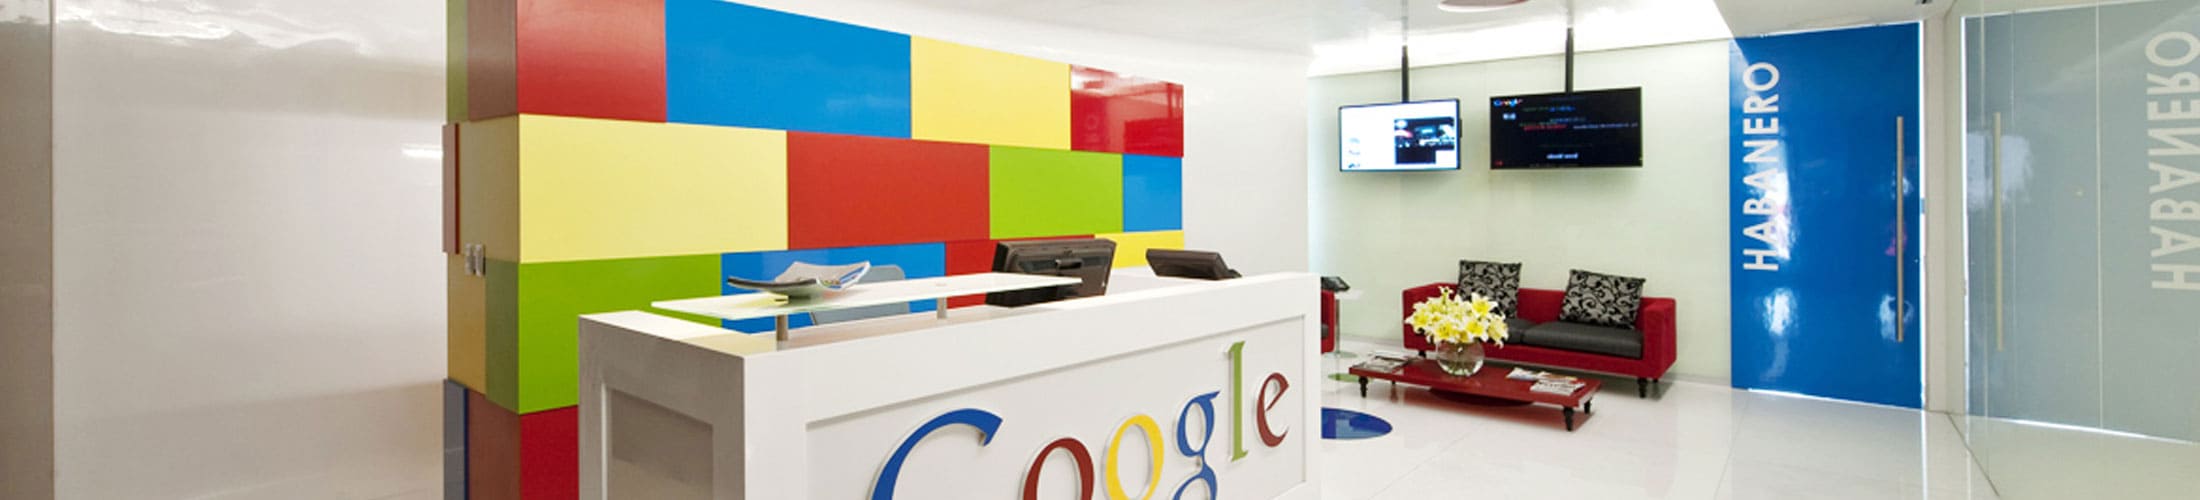 ¿Cómo son las oficinas de Google?